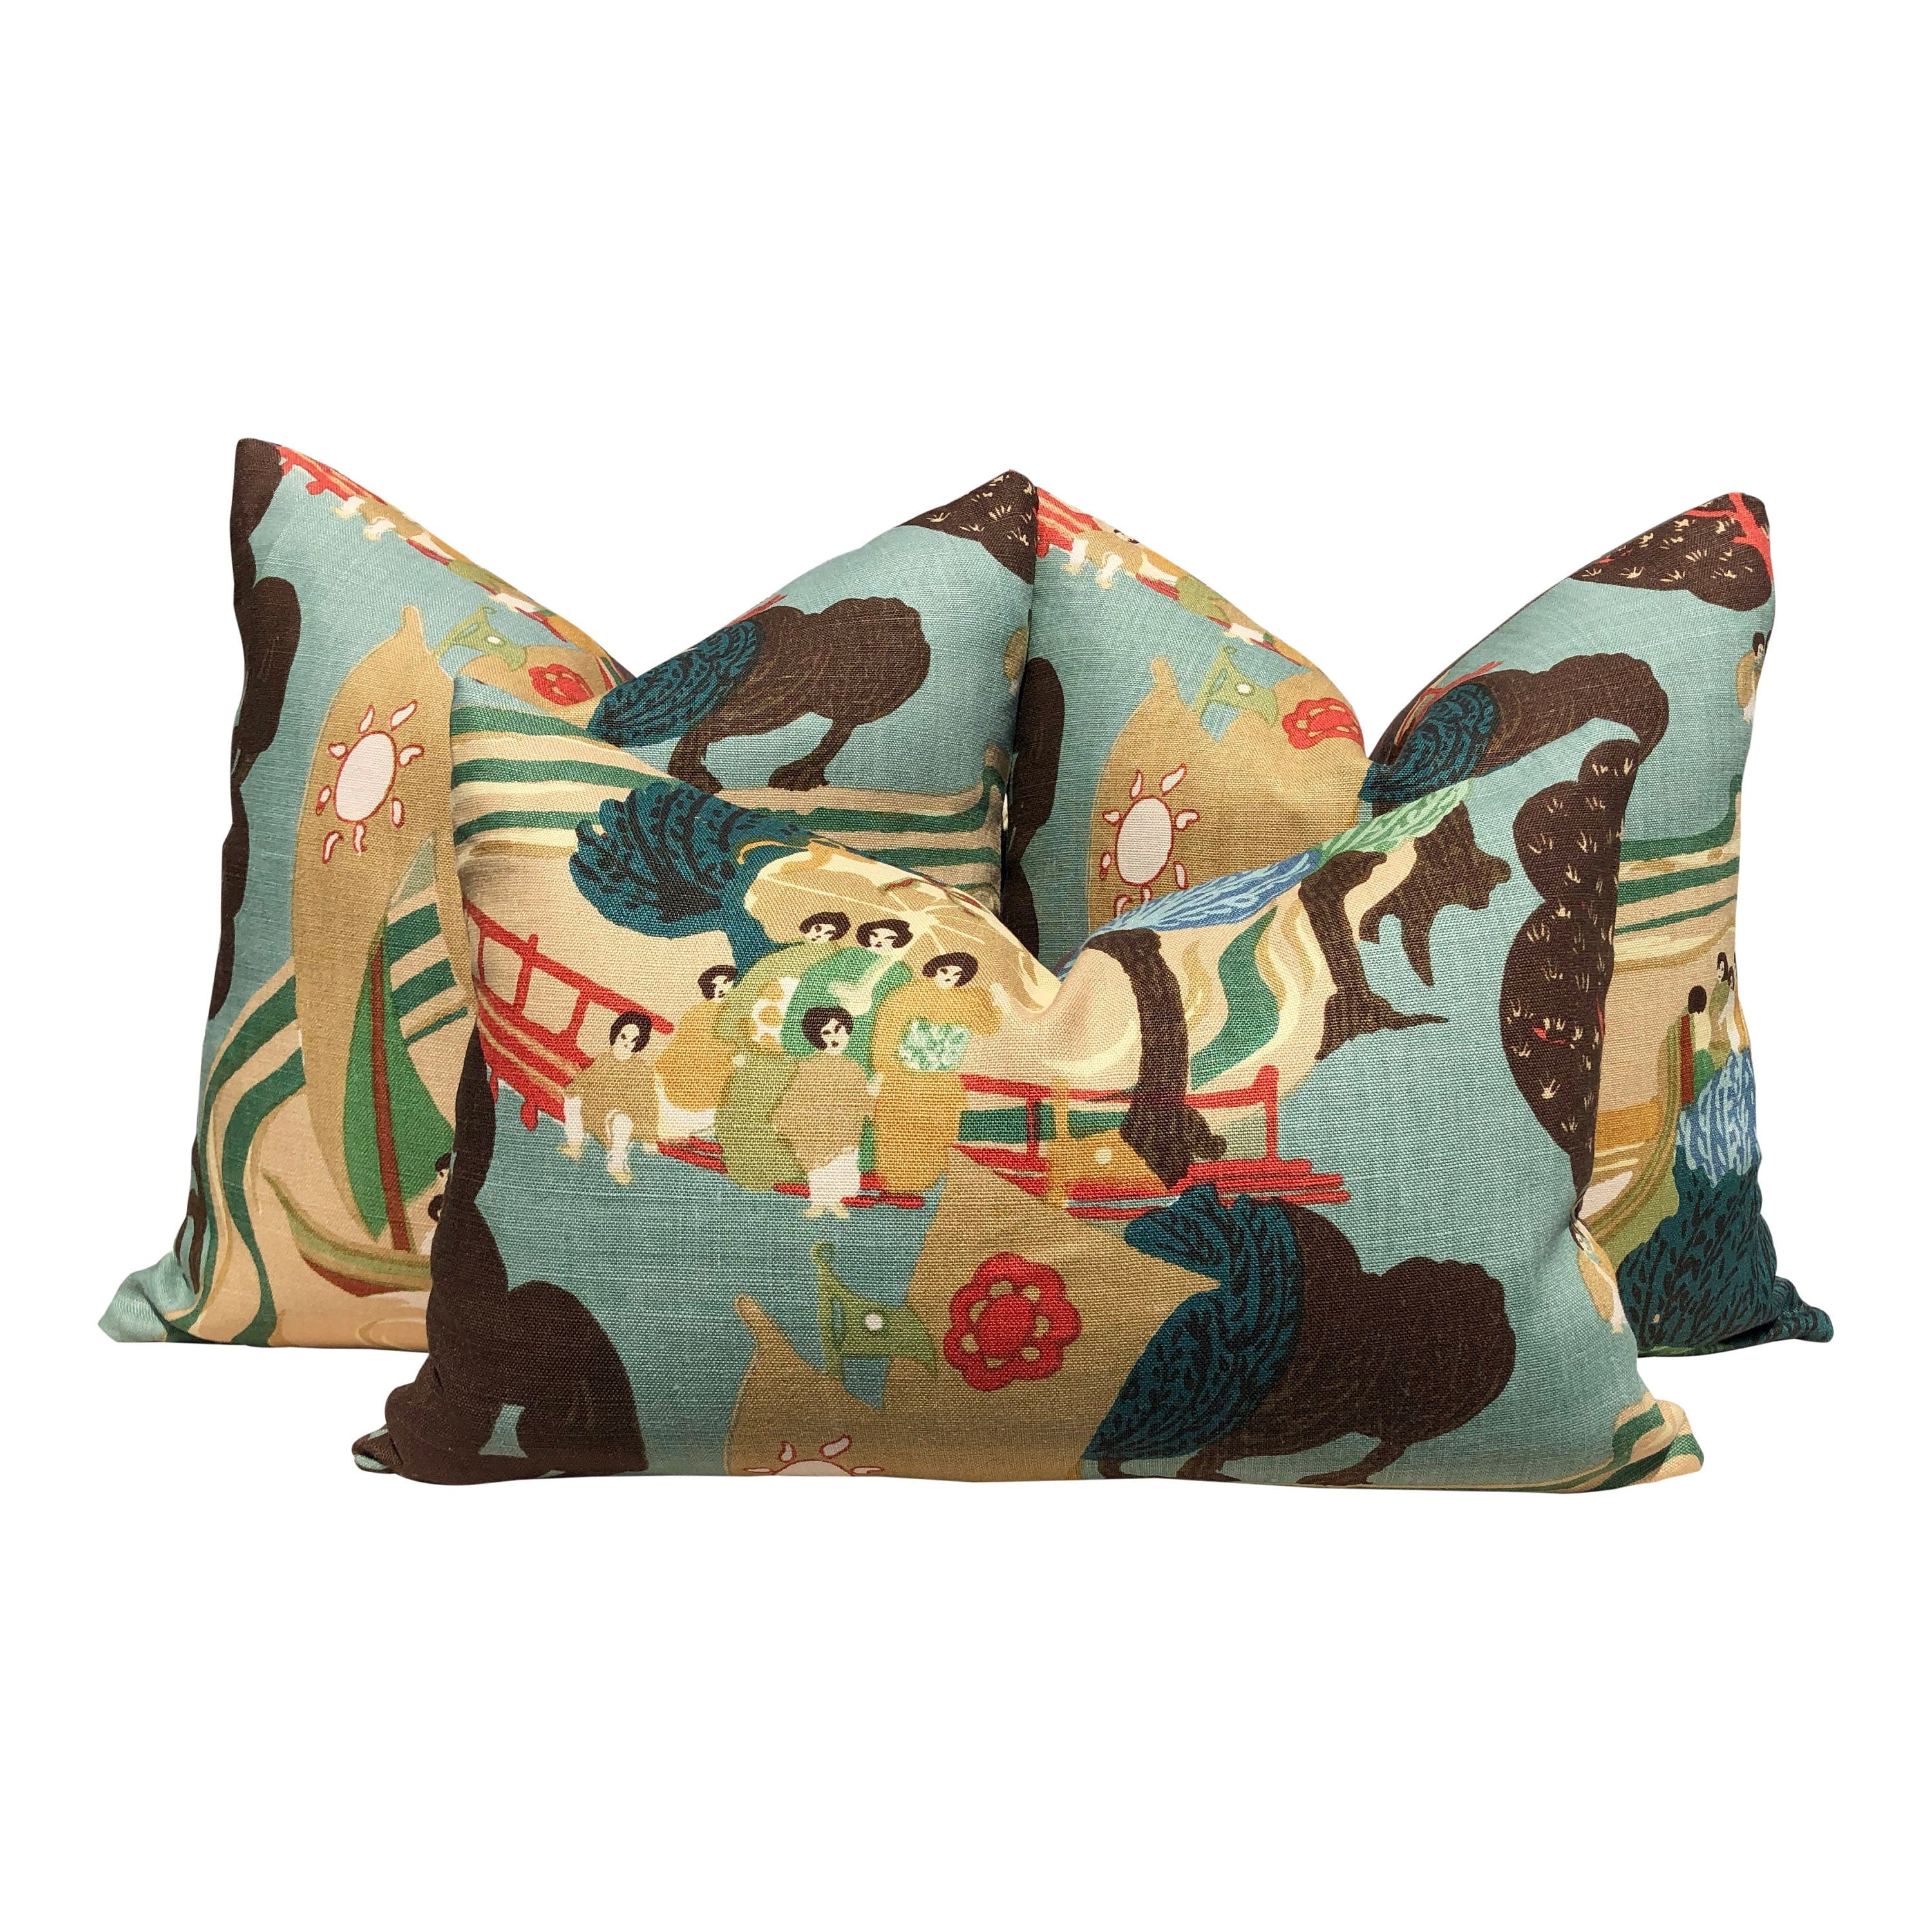 Schumacher Pearl River Linen Pillow in Jade. Designer Tan Aqua Pillow // Lumbar Linen Pillow // Chinoiserie Pillow Cover //